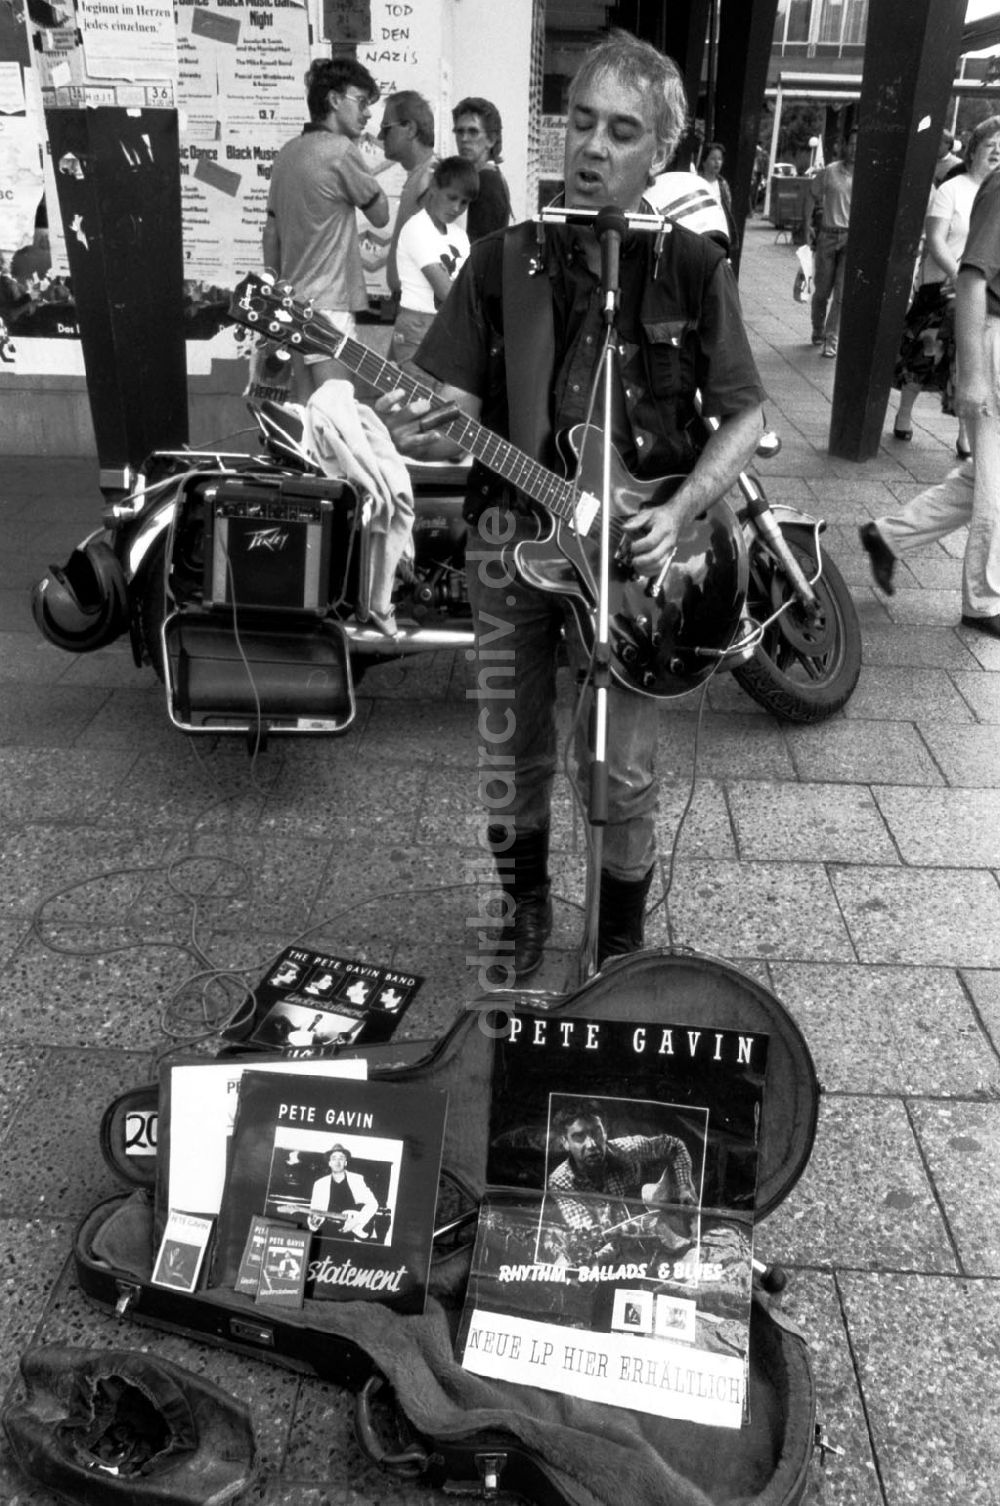 DDR-Bildarchiv: Berlin-Mitte - Mitte/Berlin Rockmusiker auf der Rathauspassage 15.07.90 Foto: Grahn Umschlagnummer: 0940